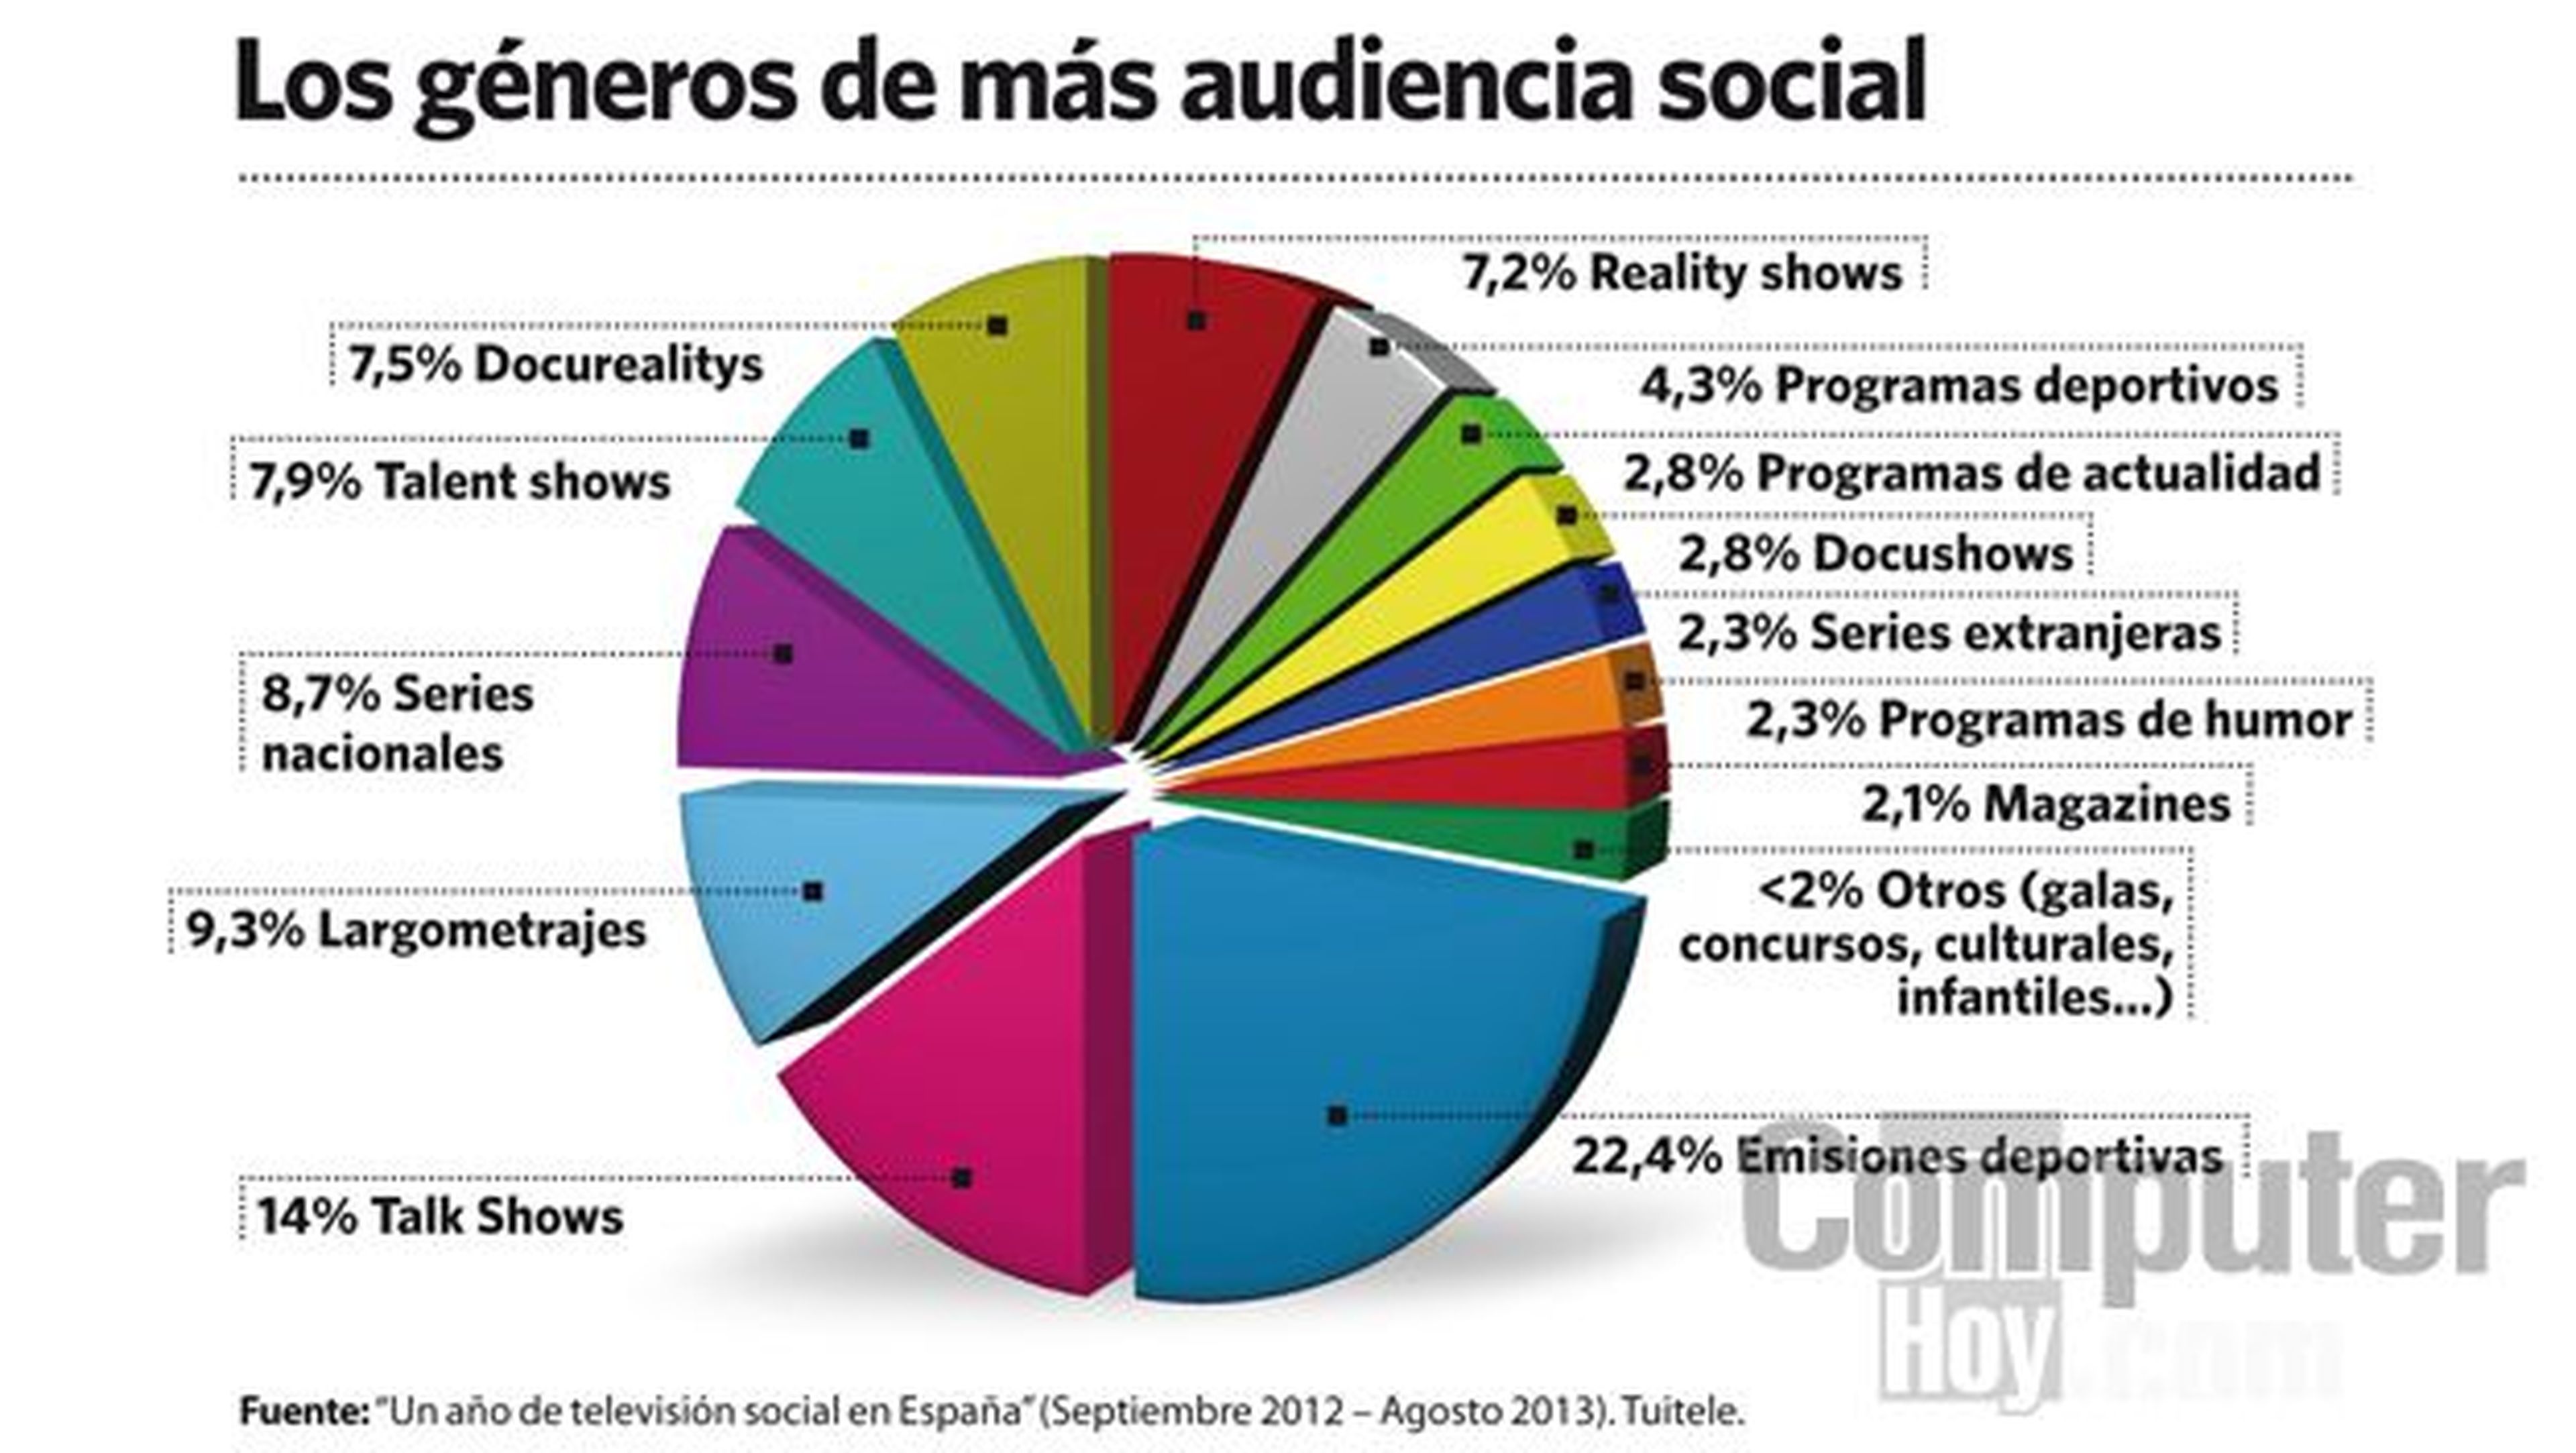 Los géneros televisivos con más audiencia social